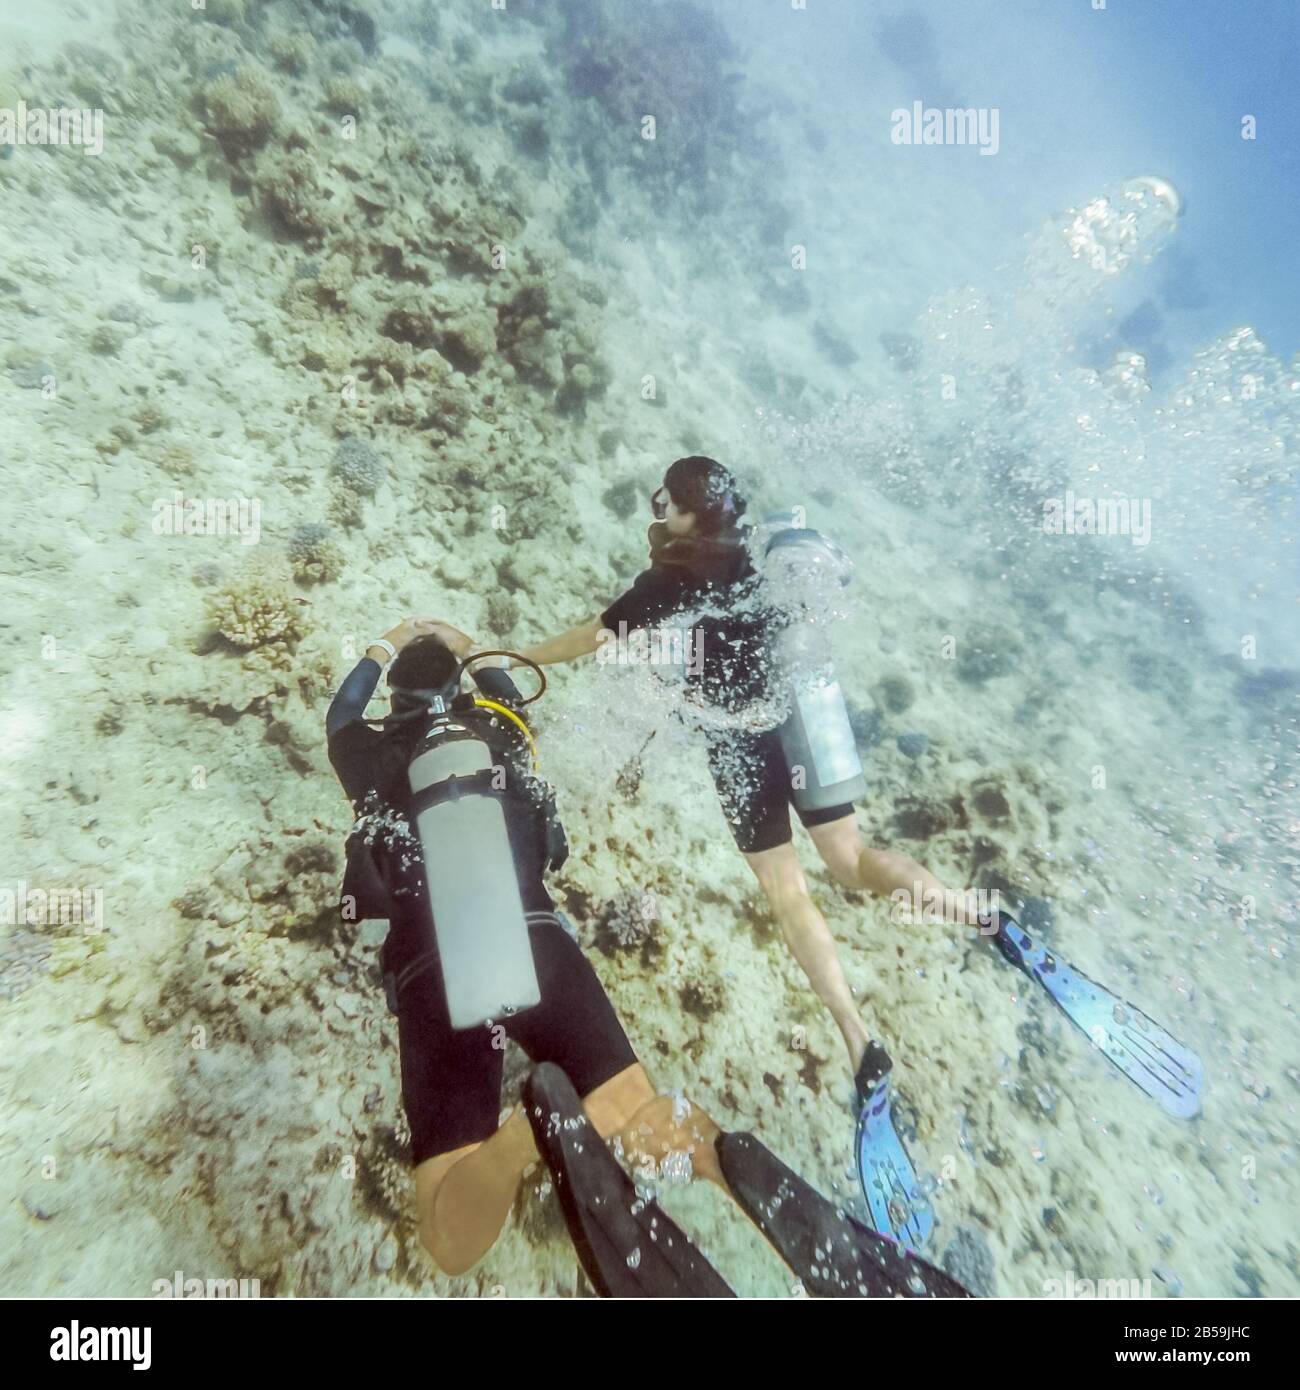 Los buceadores disfrutan buceando en aguas claras en un arrecife de coral en el Mar Rojo, Egipto. Foto de stock